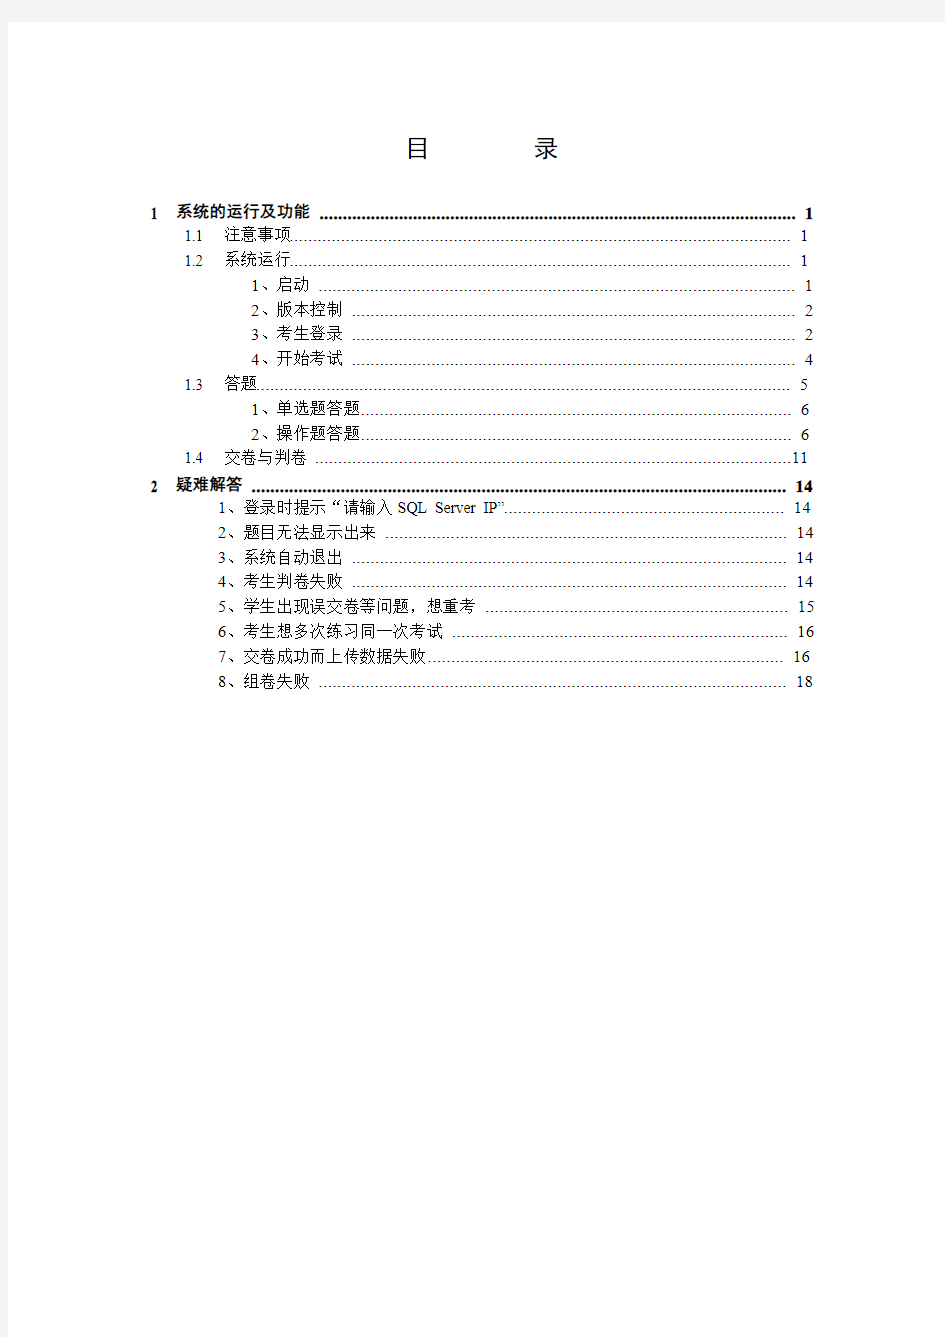 计算机基础考试系统学生版用户手册